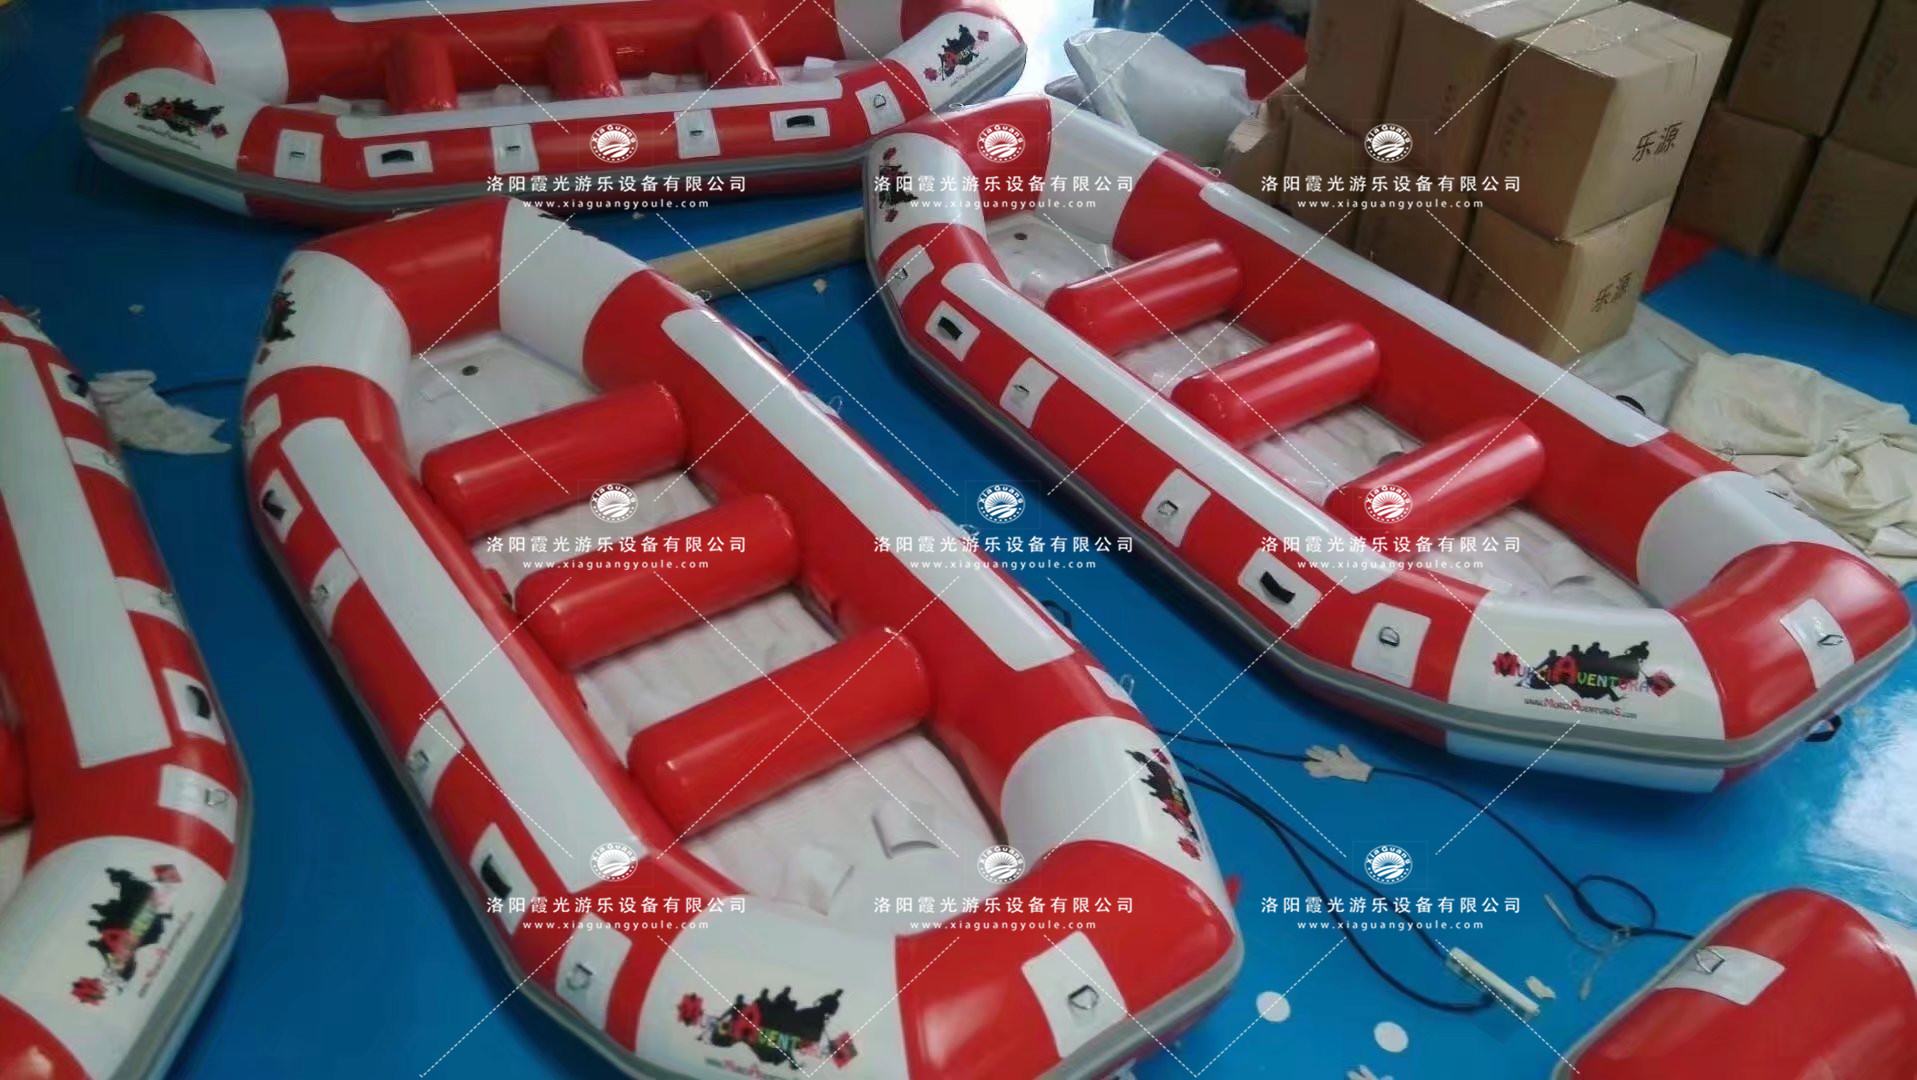 桂林救援漂流船